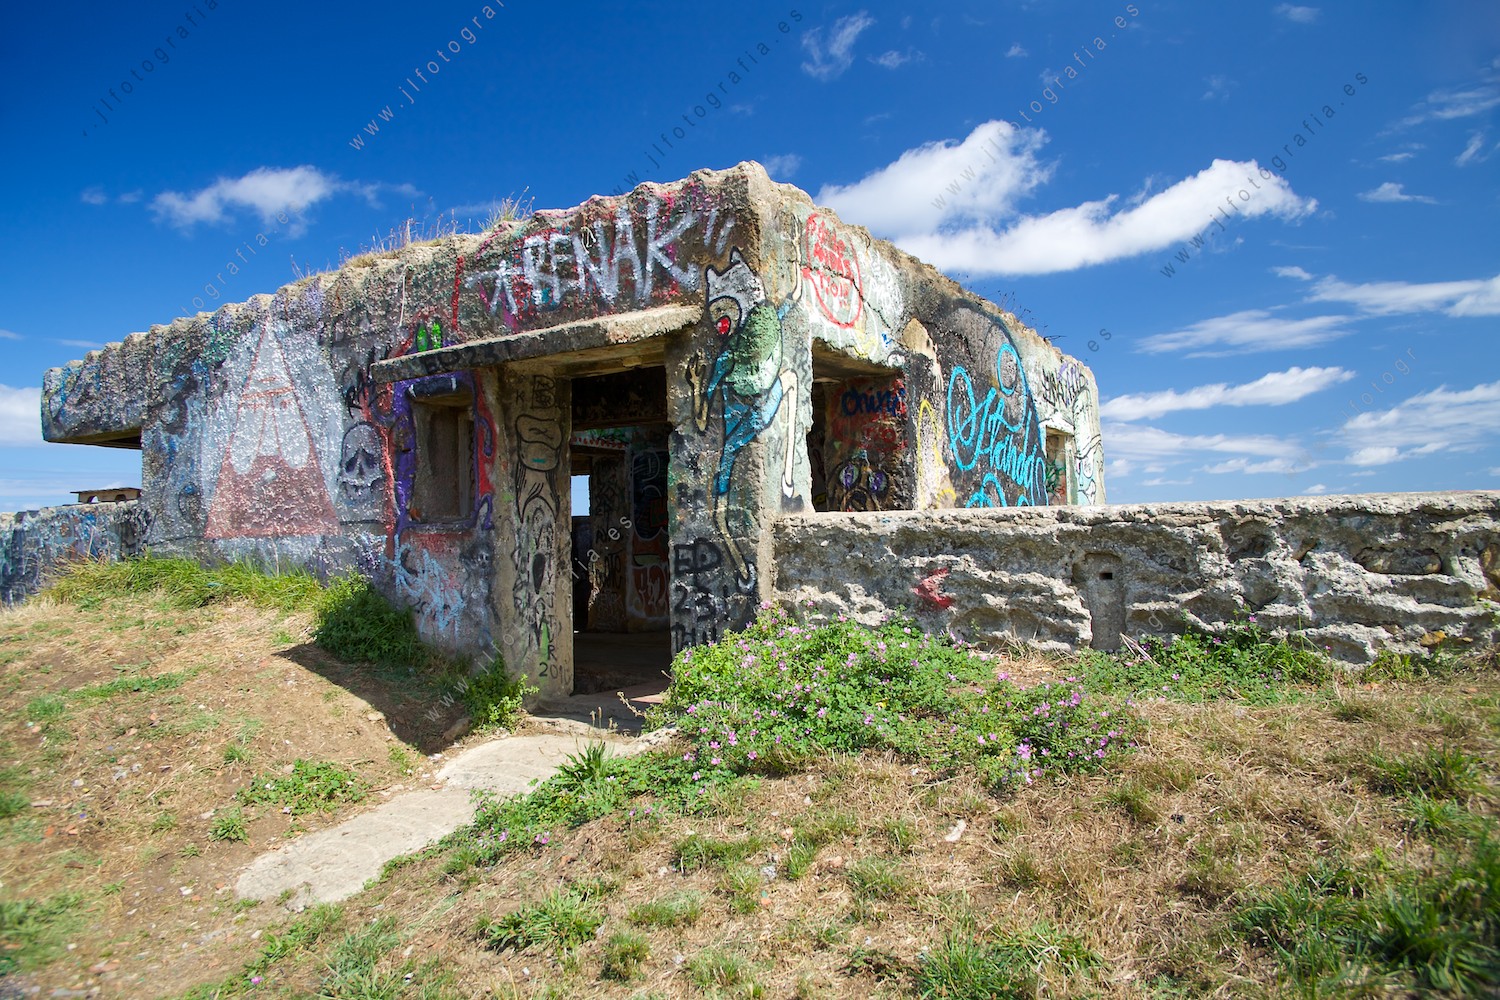 Antigua garita bunker de la costa vasca en los acantilados de Sopelana, lleno de grafitis